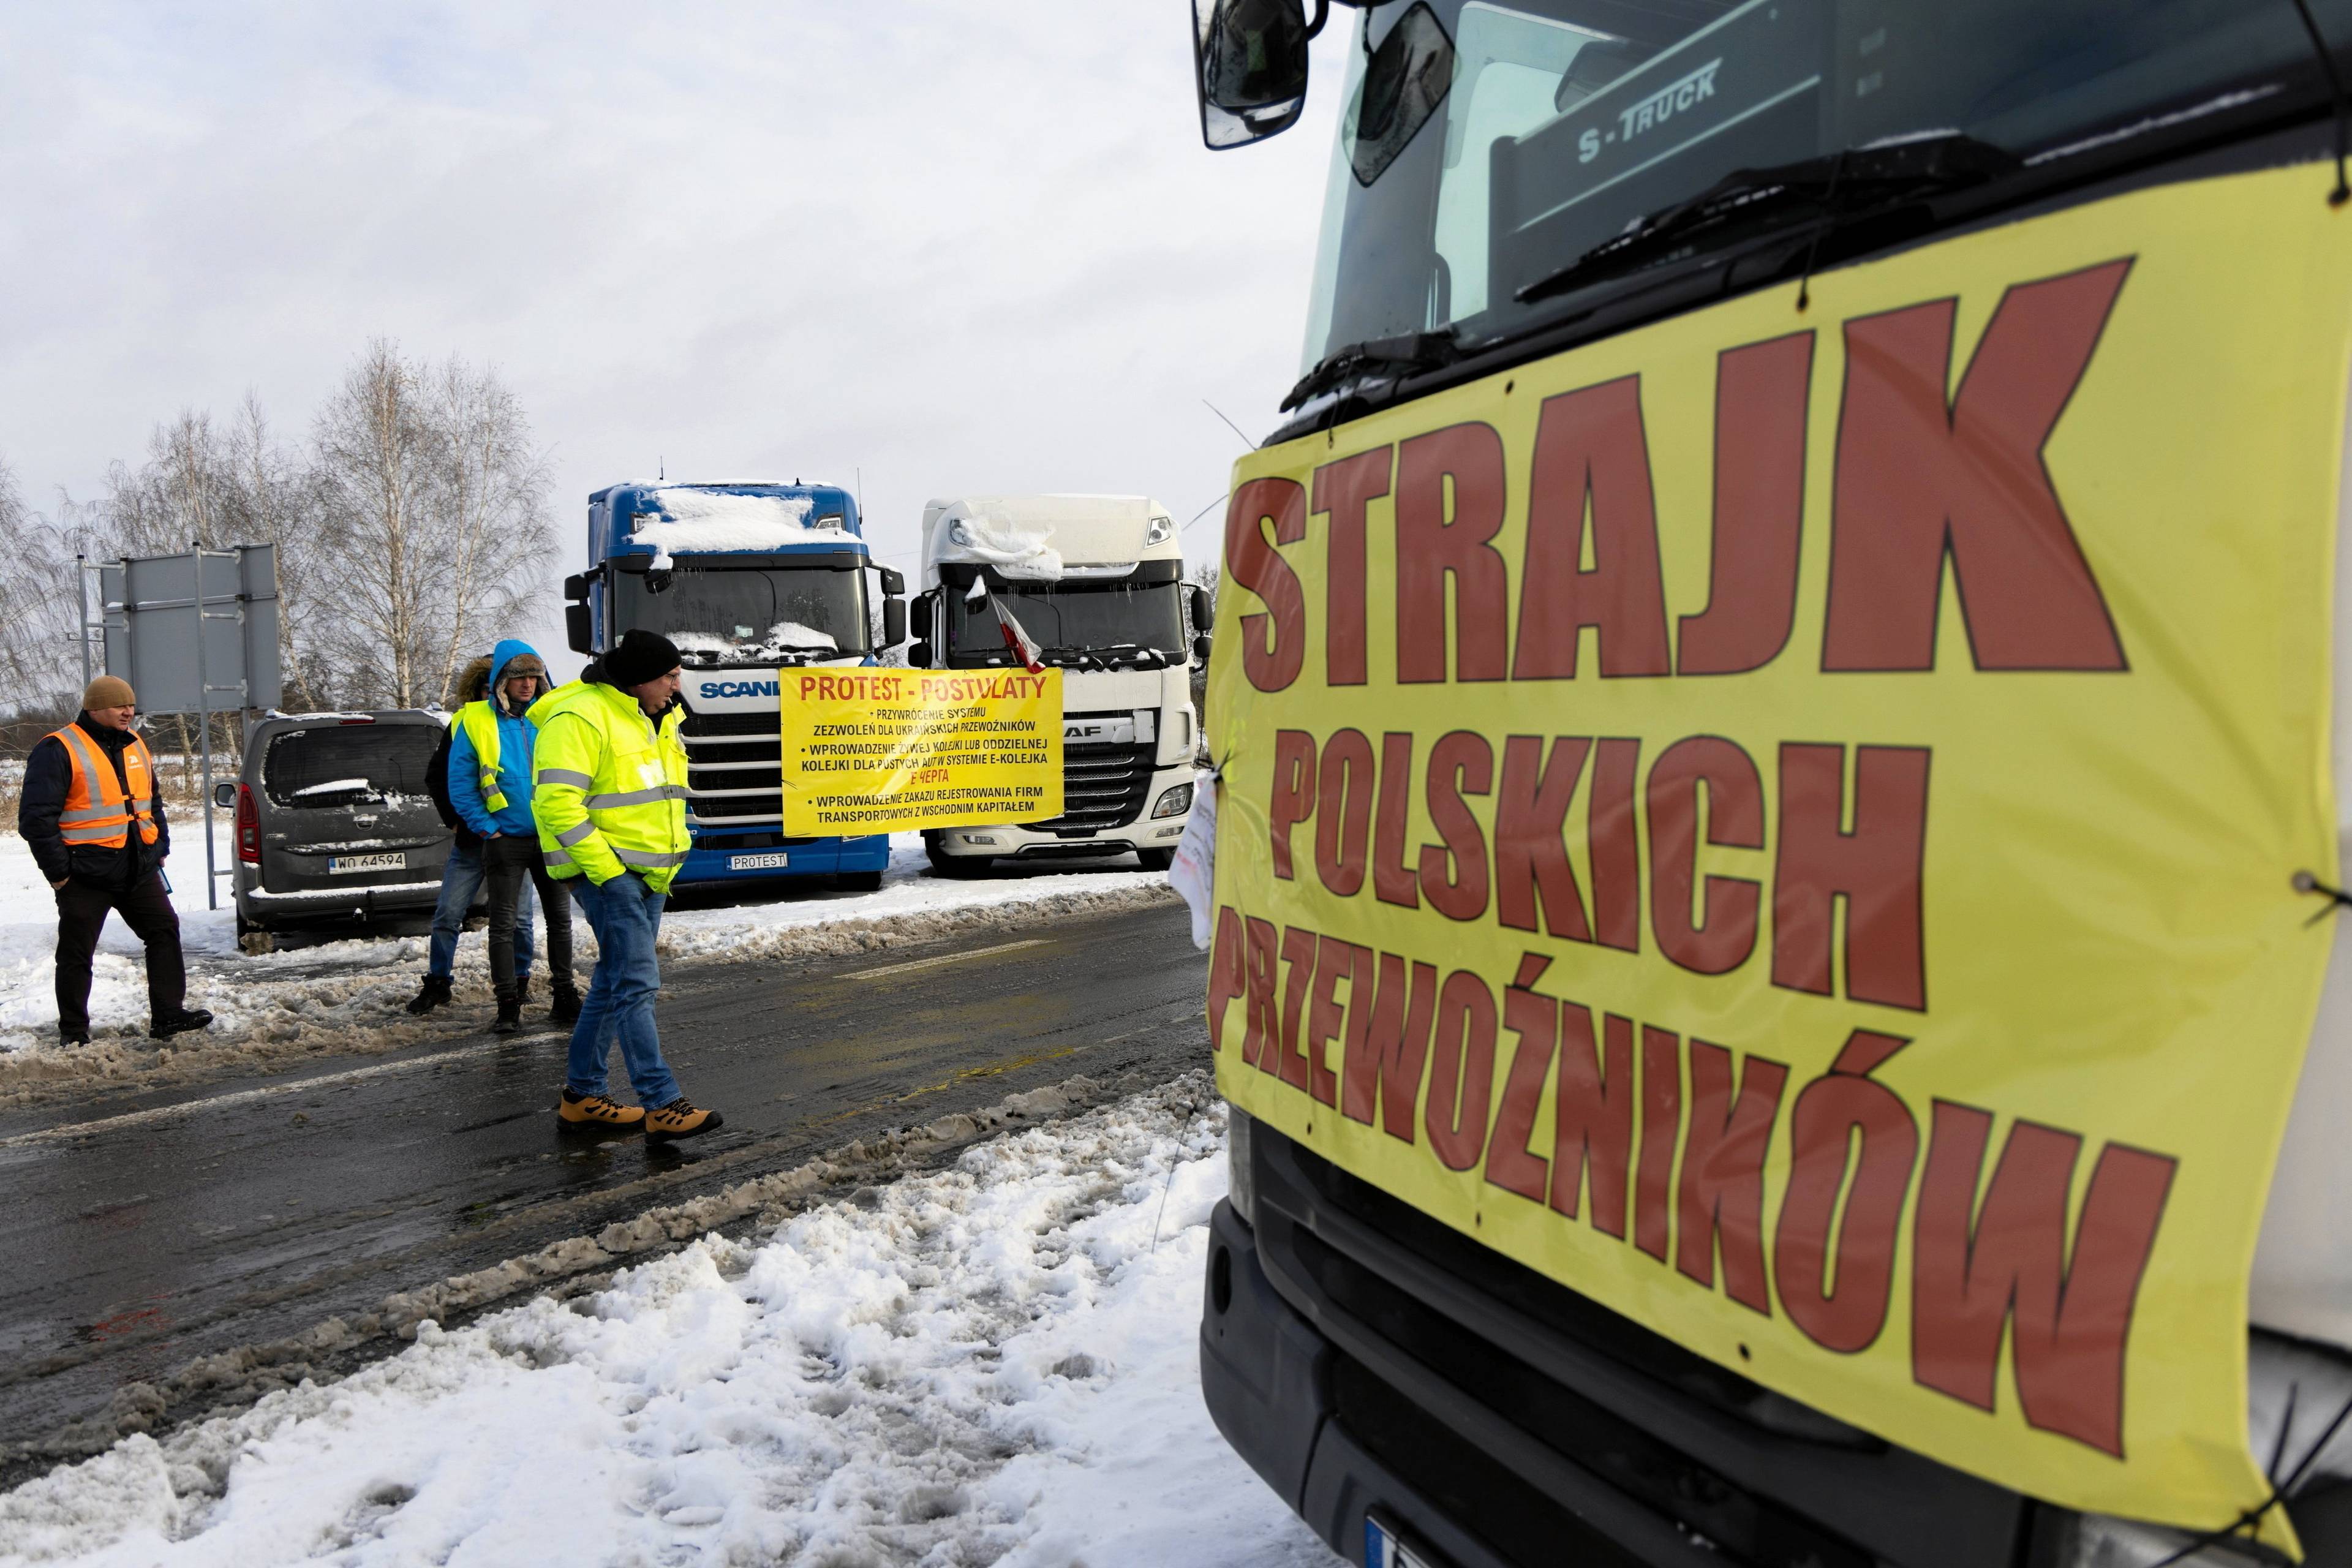 ciężarówka z płachtą z napisem "strajk polskich przewoźników" na masce. w tle inne pojazdy i protestujący w kamizelkach.